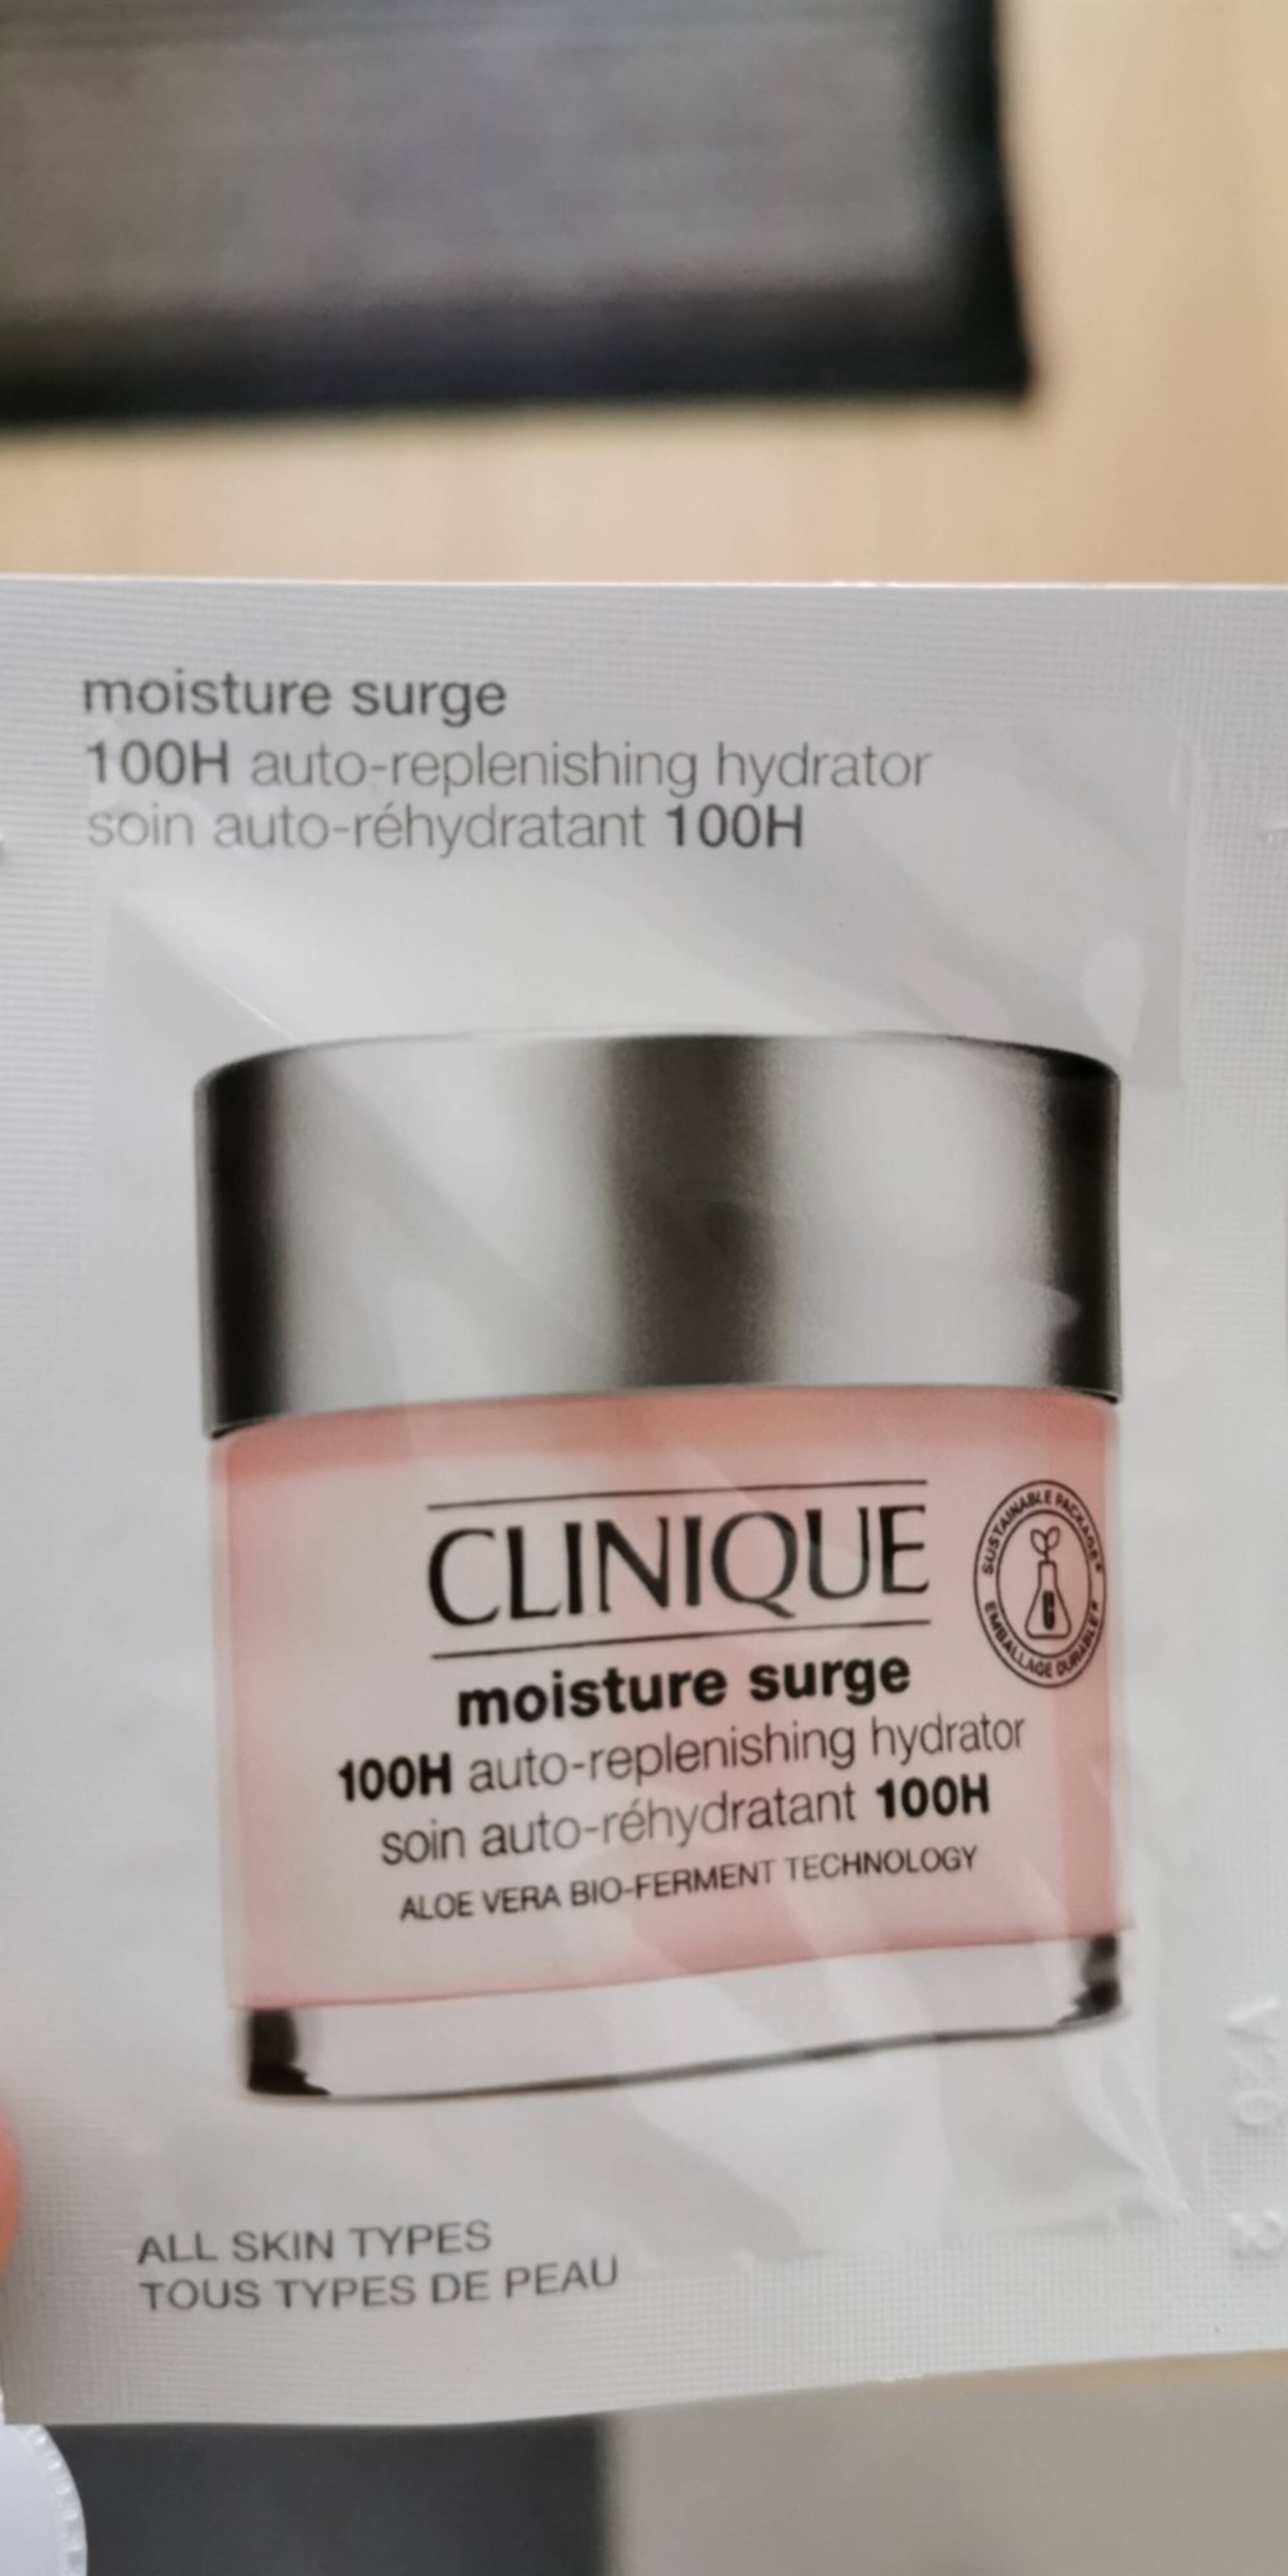 CLINIQUE - Moisture surge - Soin aut-réhydratant 100H